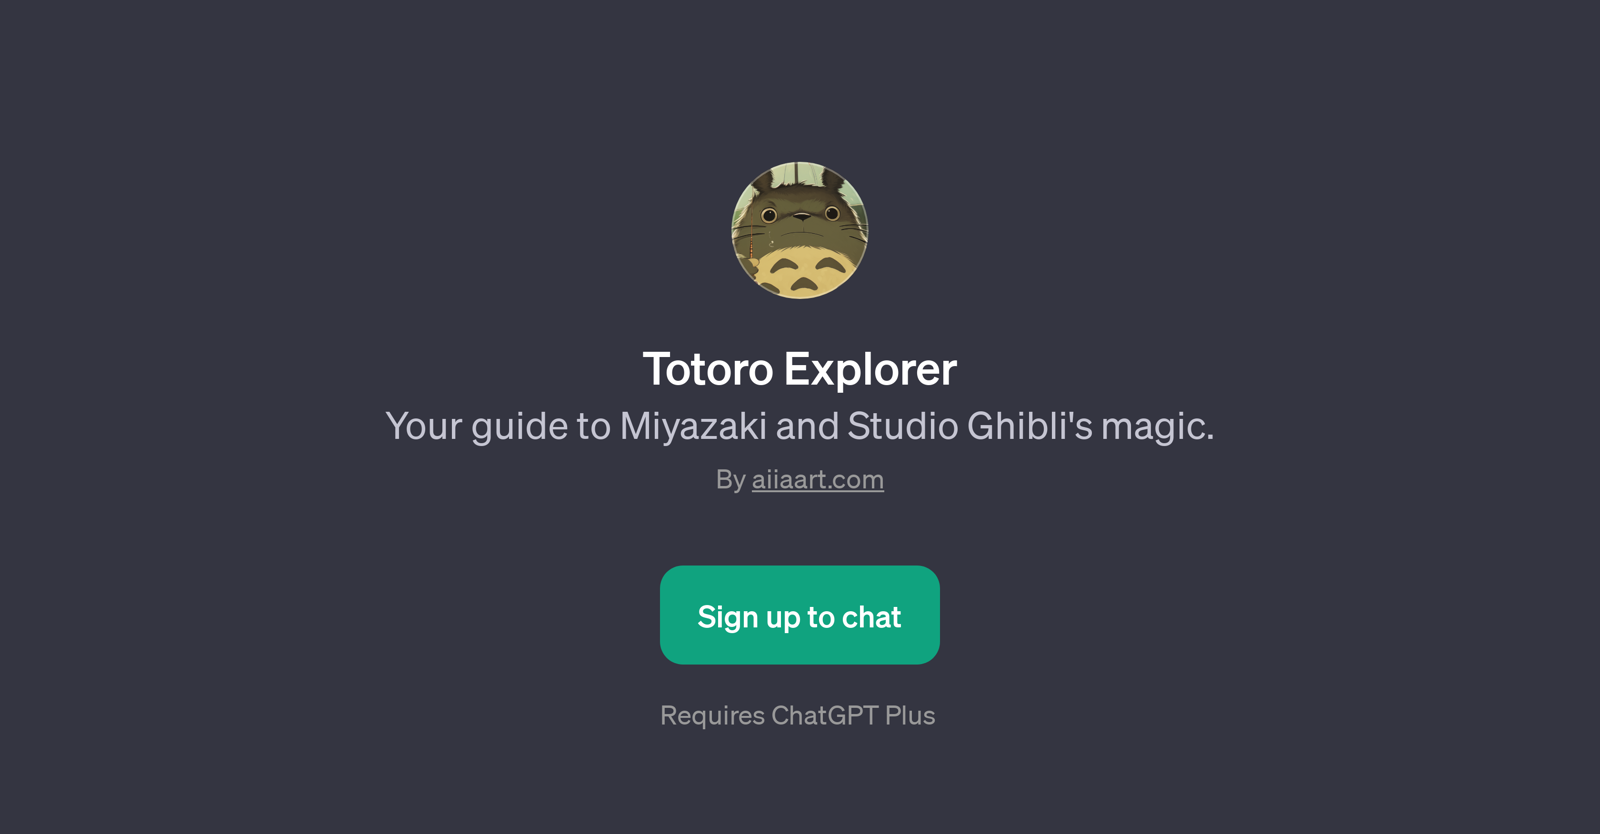 Totoro Explorer website